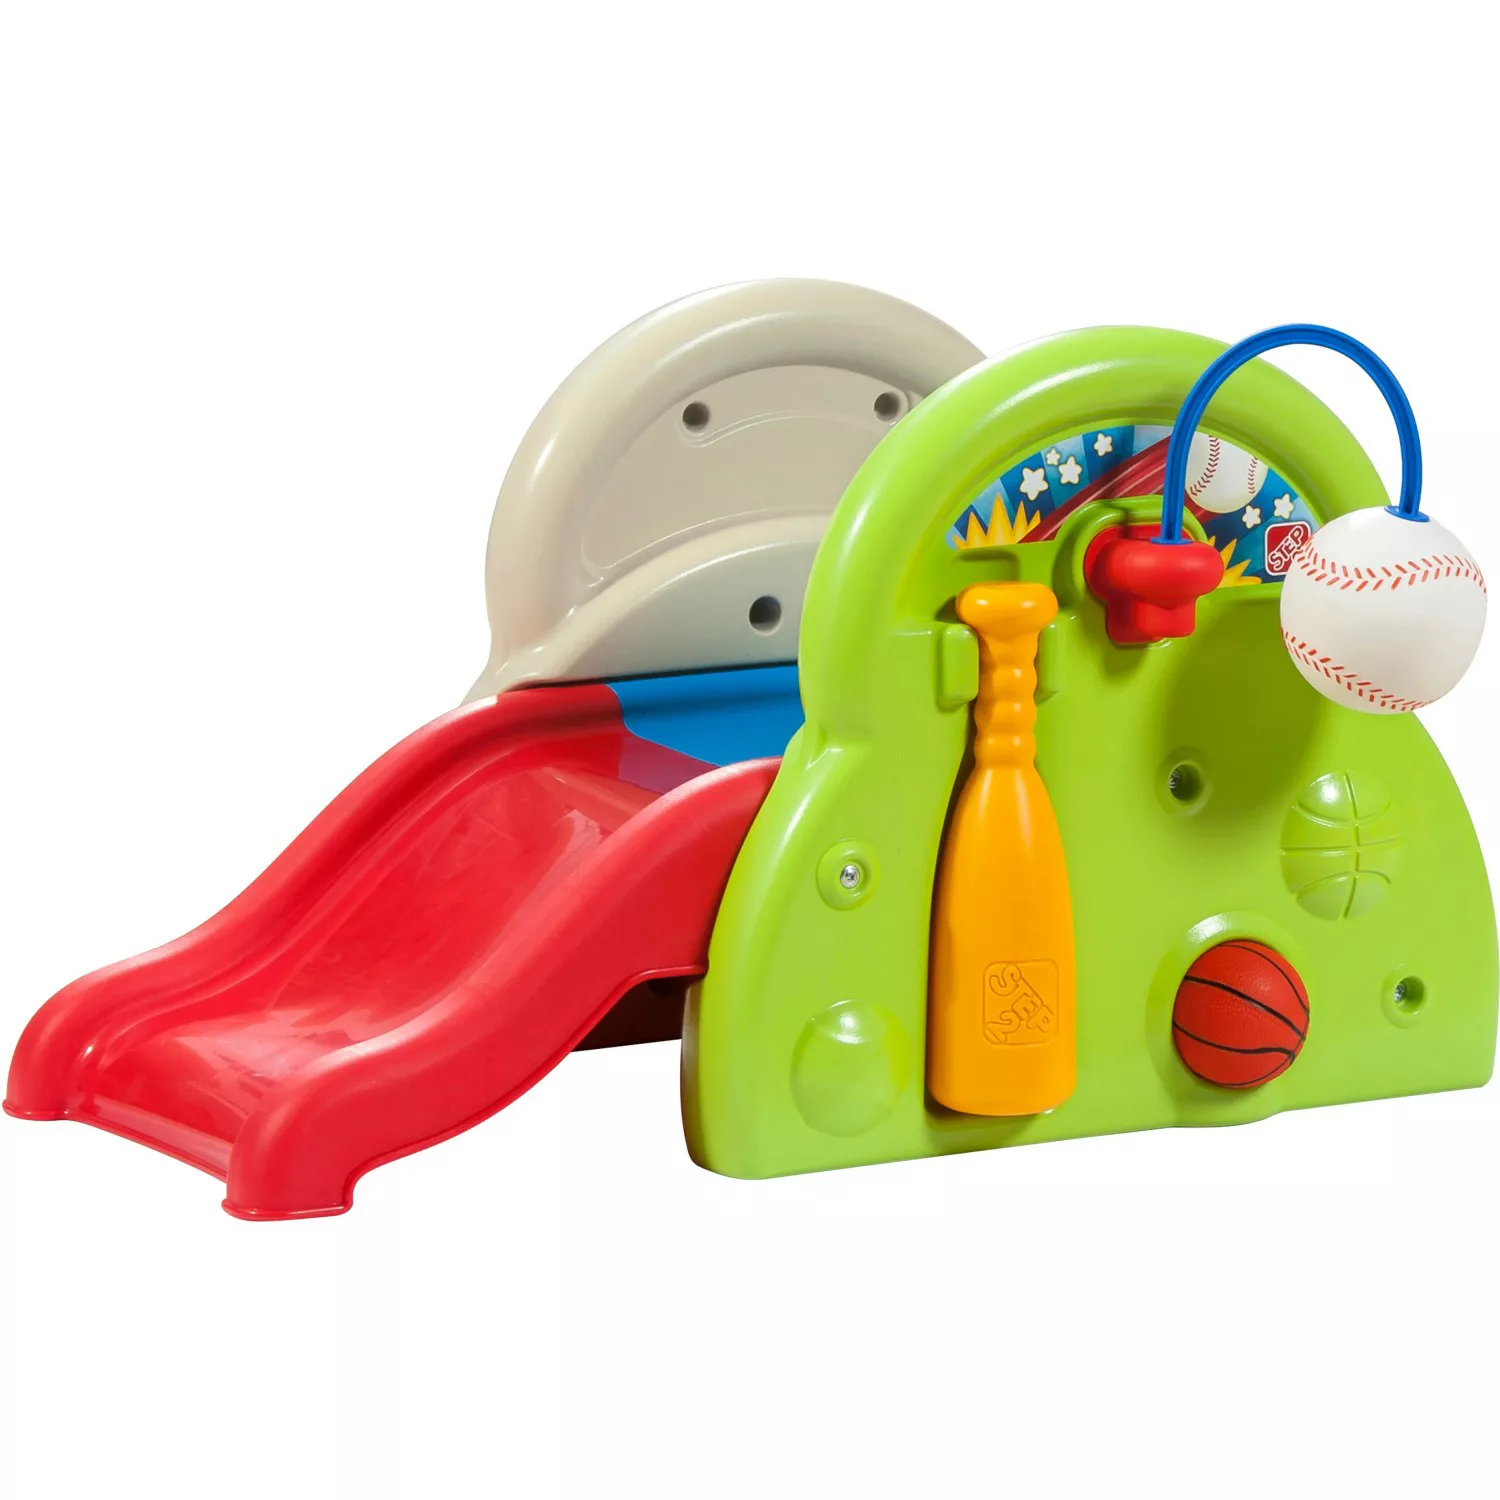 Step2 Spielzeug-Rutsche Sports-Tastic Activity Center günstig online kaufen